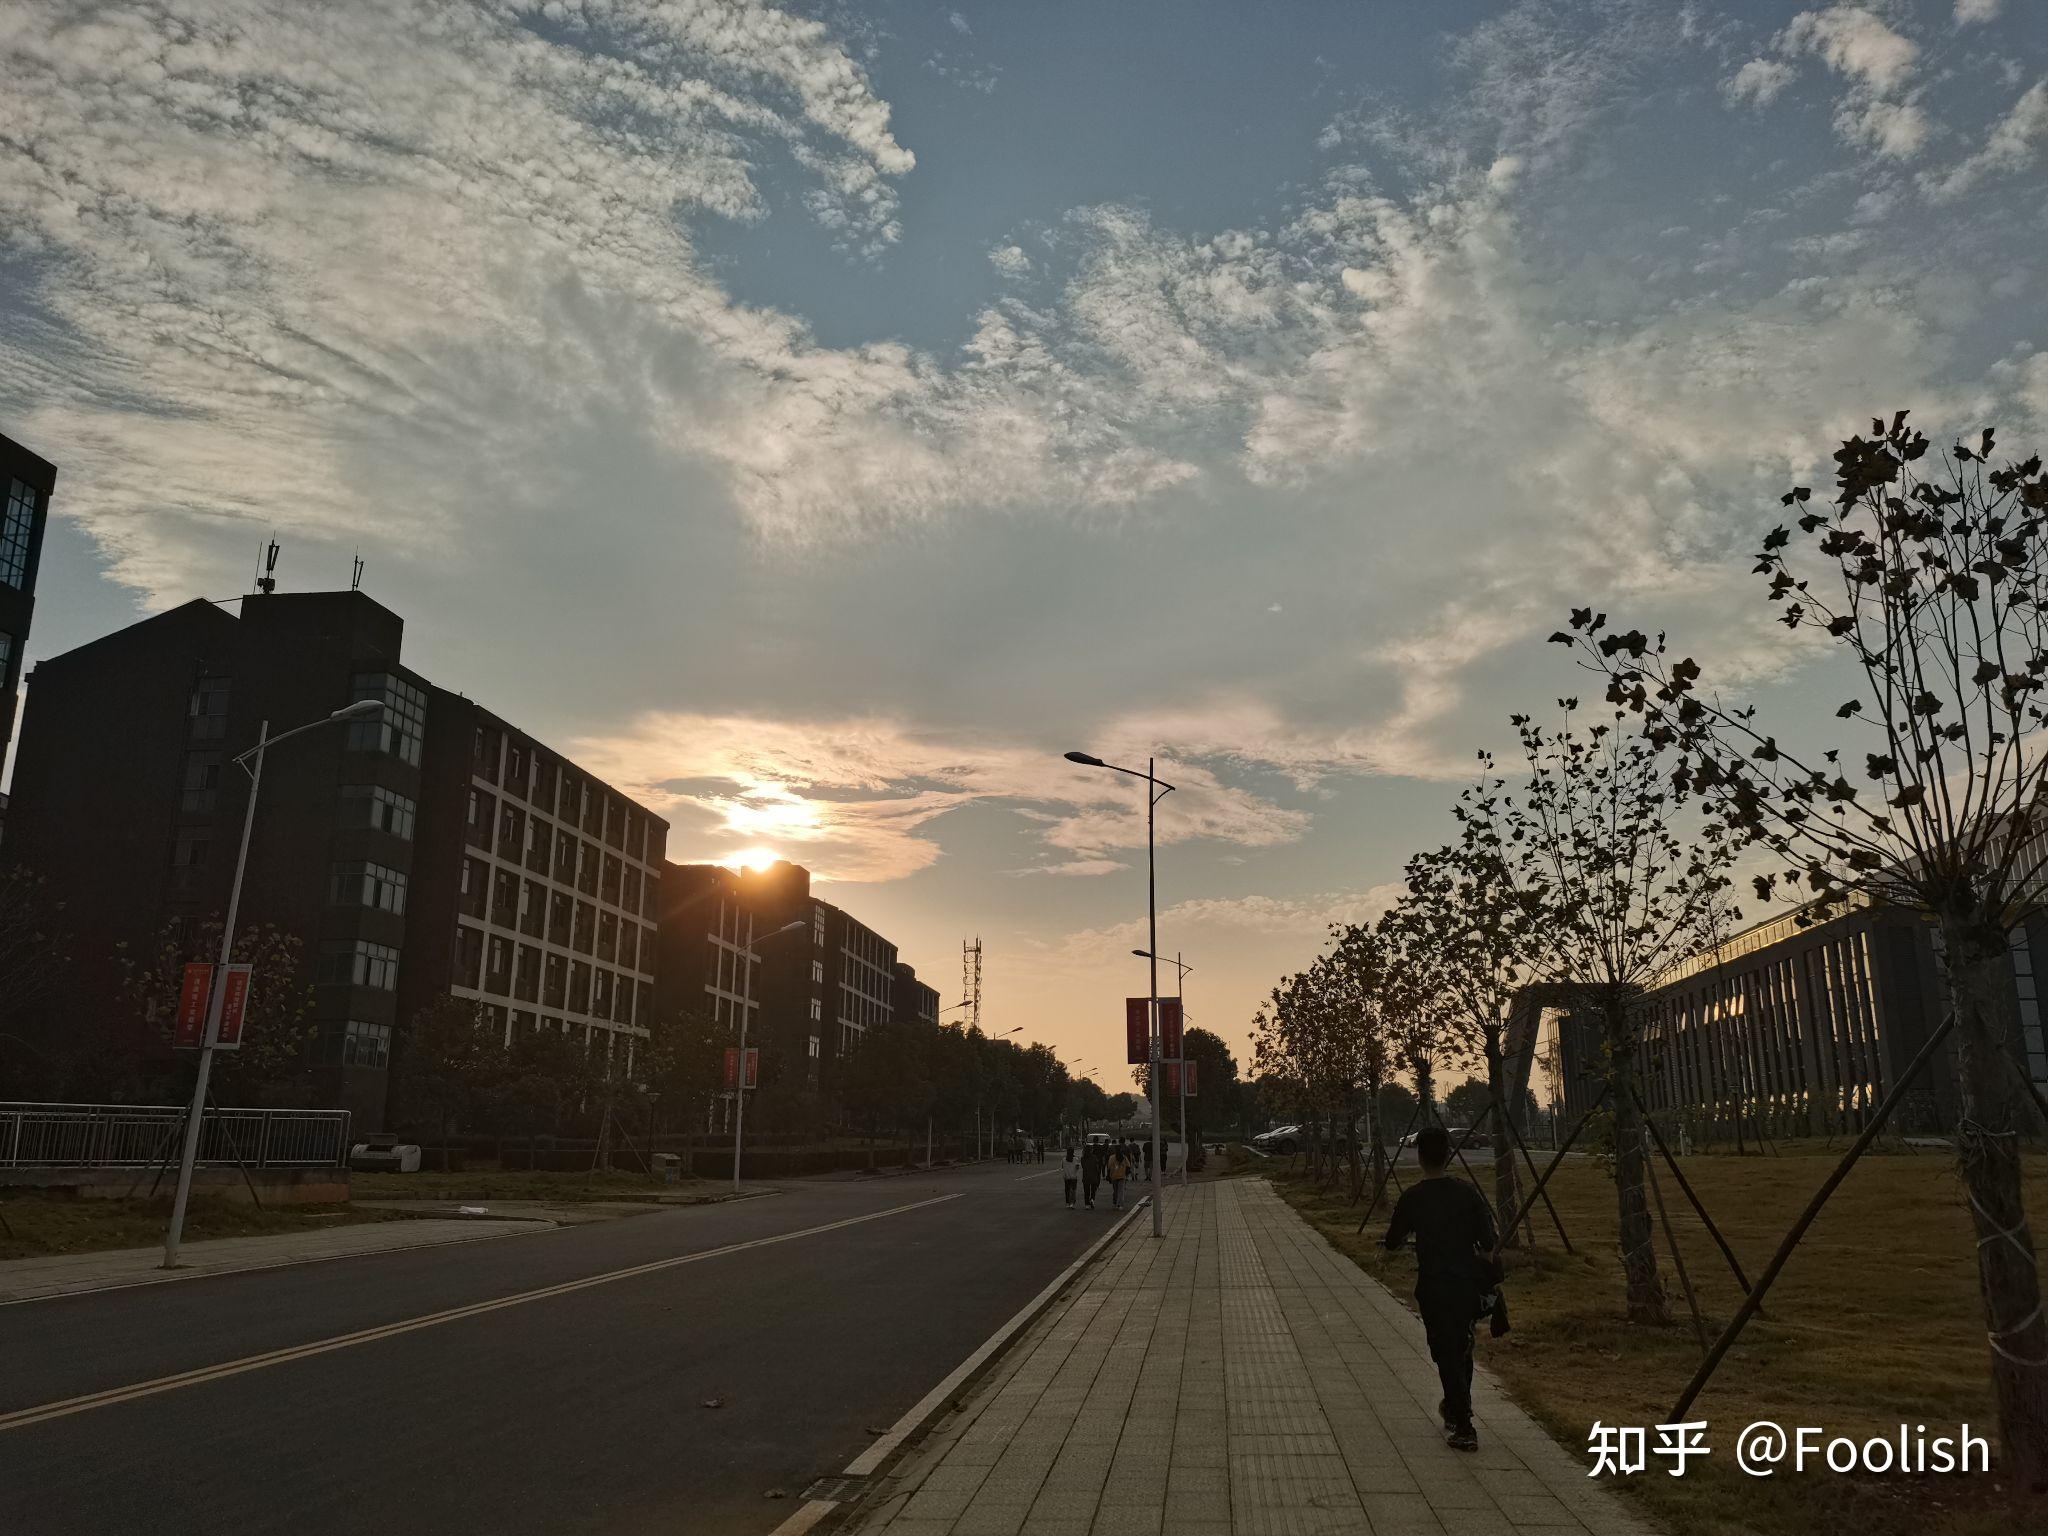 湘潭理工学院全景图图片